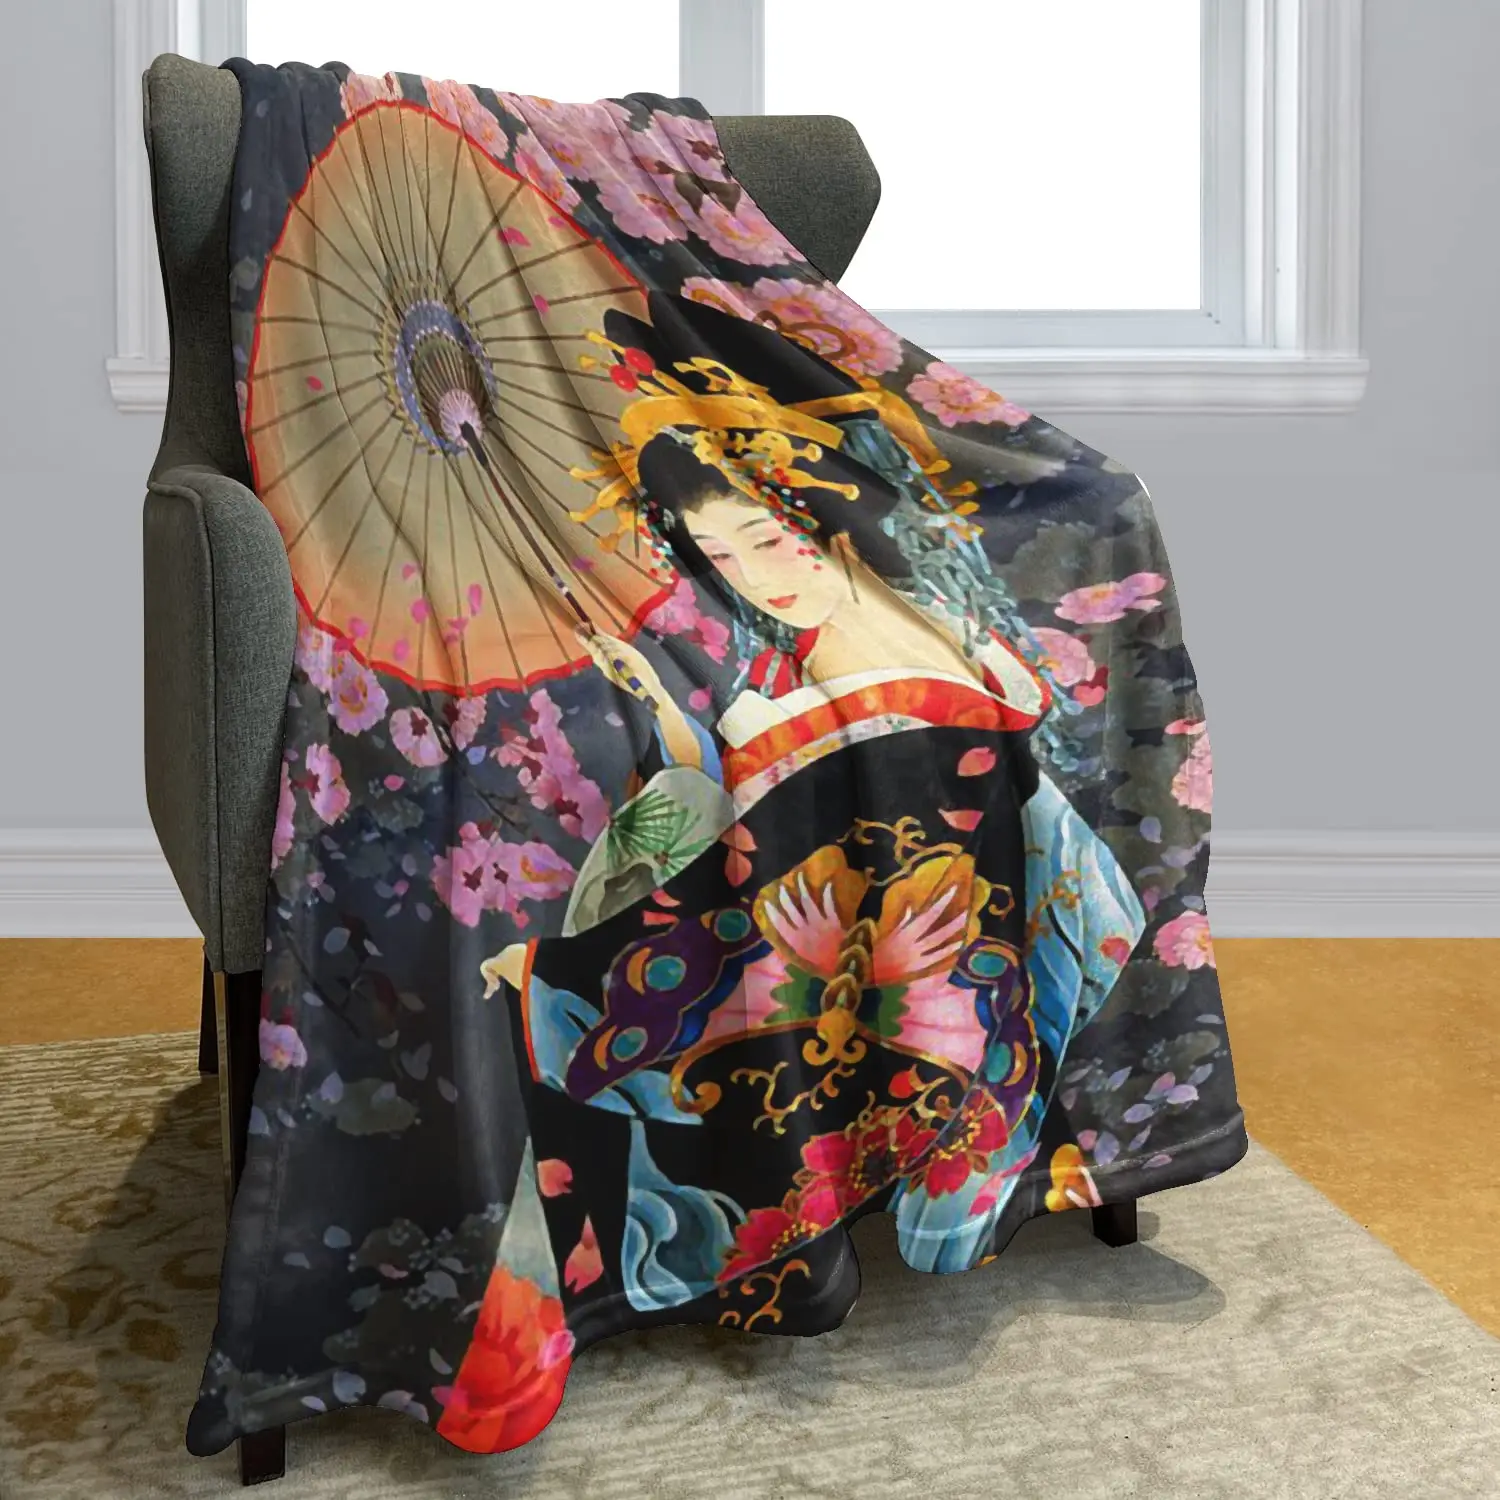 Jogo de cama japonês Ukiyoe padrão Hokusai jogo de cama para crianças e  adolescentes, estilo japonês, lençol com elástico, capa de cama floral,  decoração de quarto, rosa, 3 peças tamanho Queen